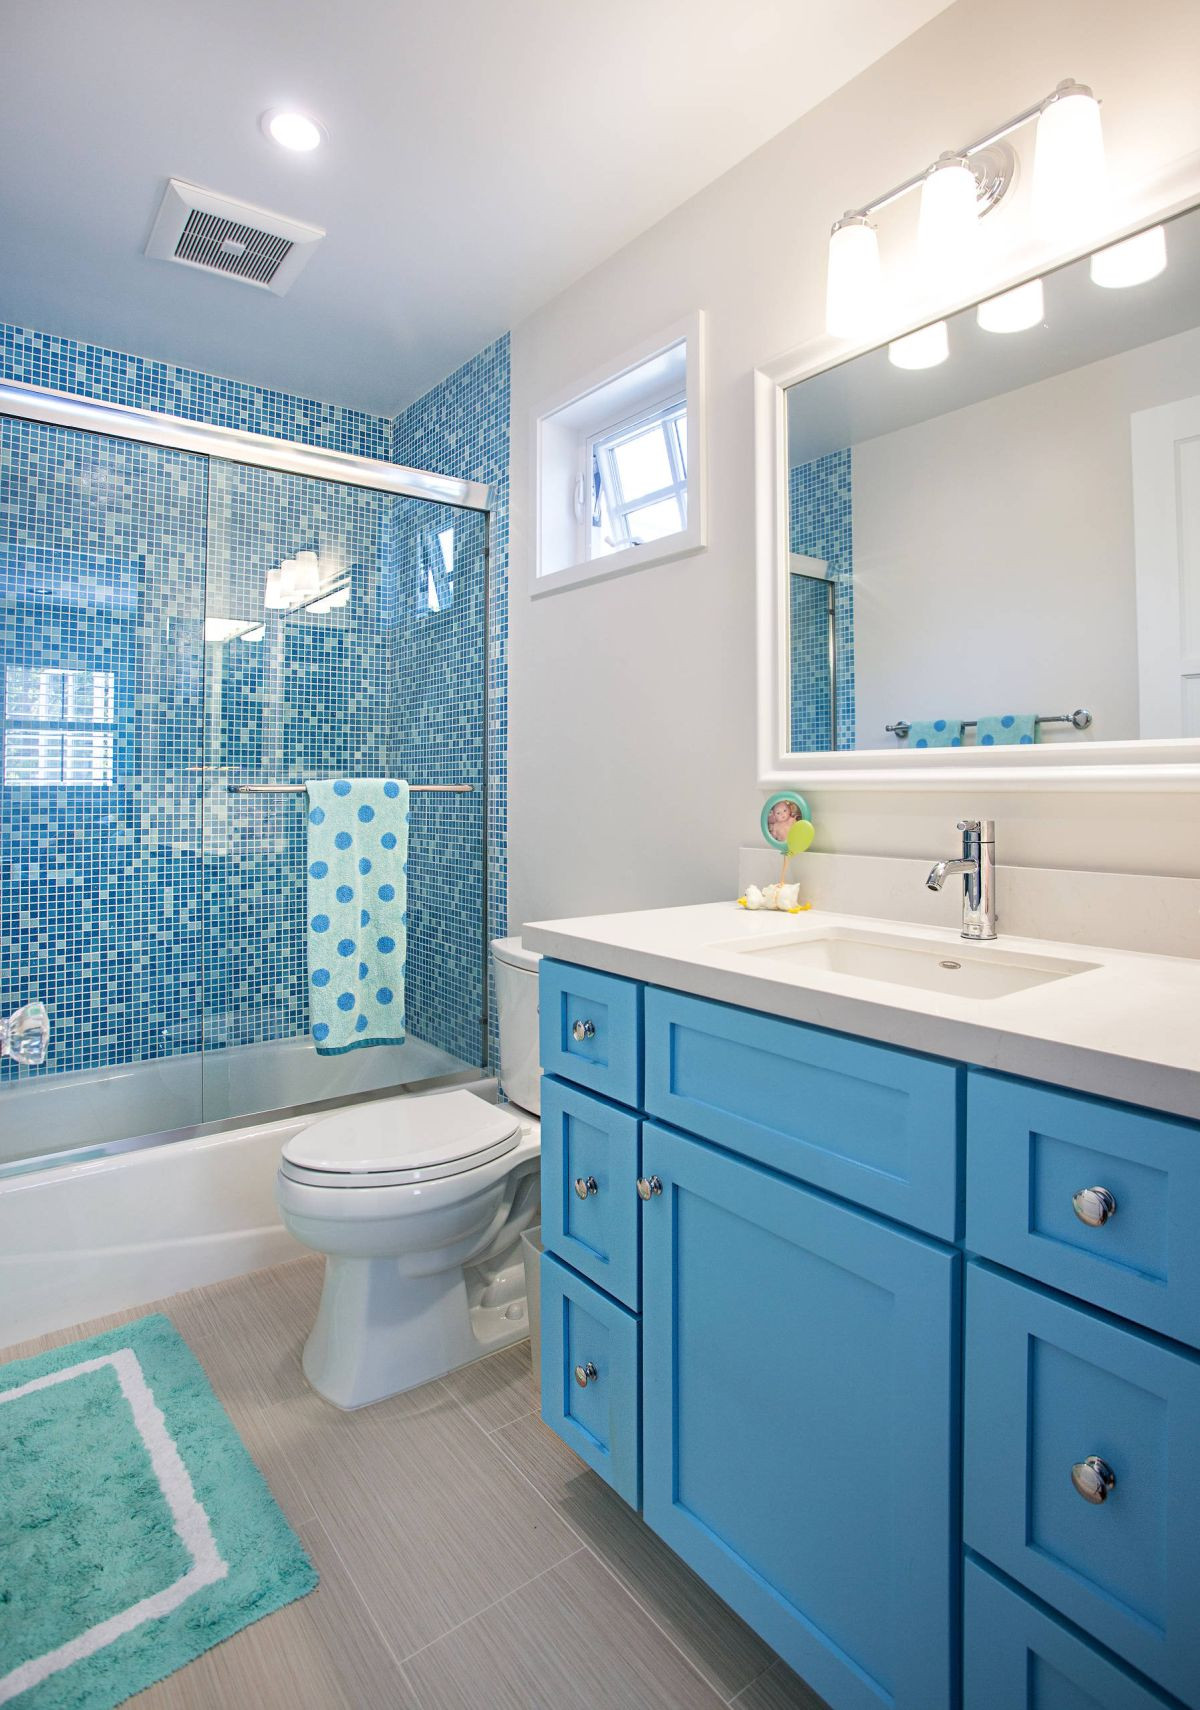 Kids Bath Decor Ideas
 12 Tips for The Best Kids Bathroom Decor